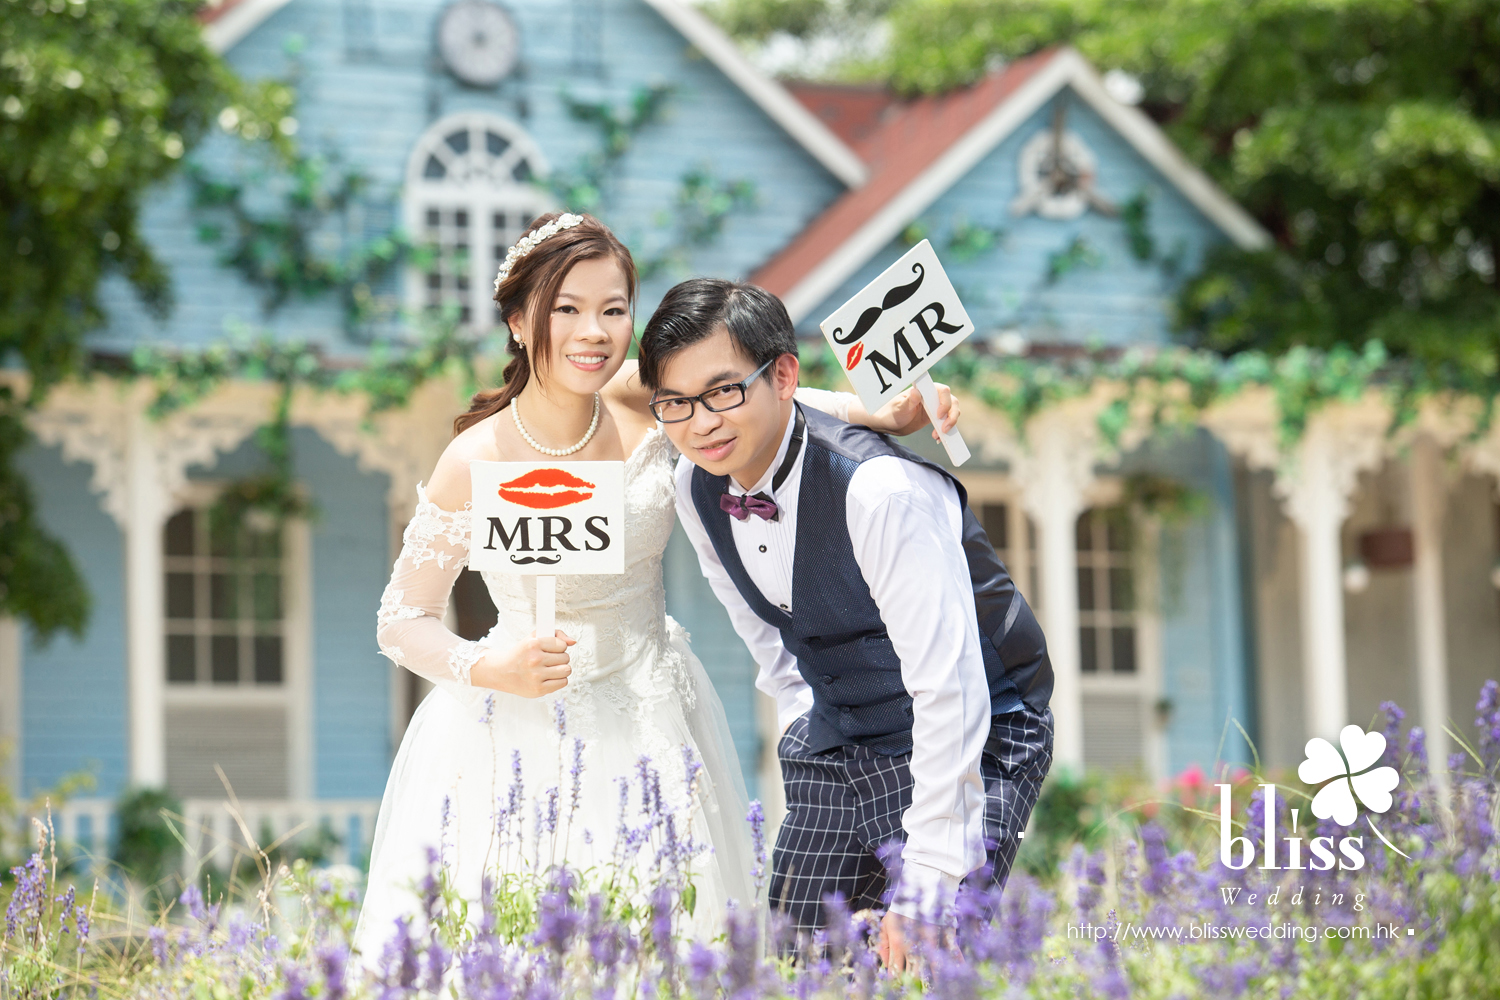 Mr Tse & Mrs Tse (婚紗城 韓式影樓 婚紗攝影 May 2018)